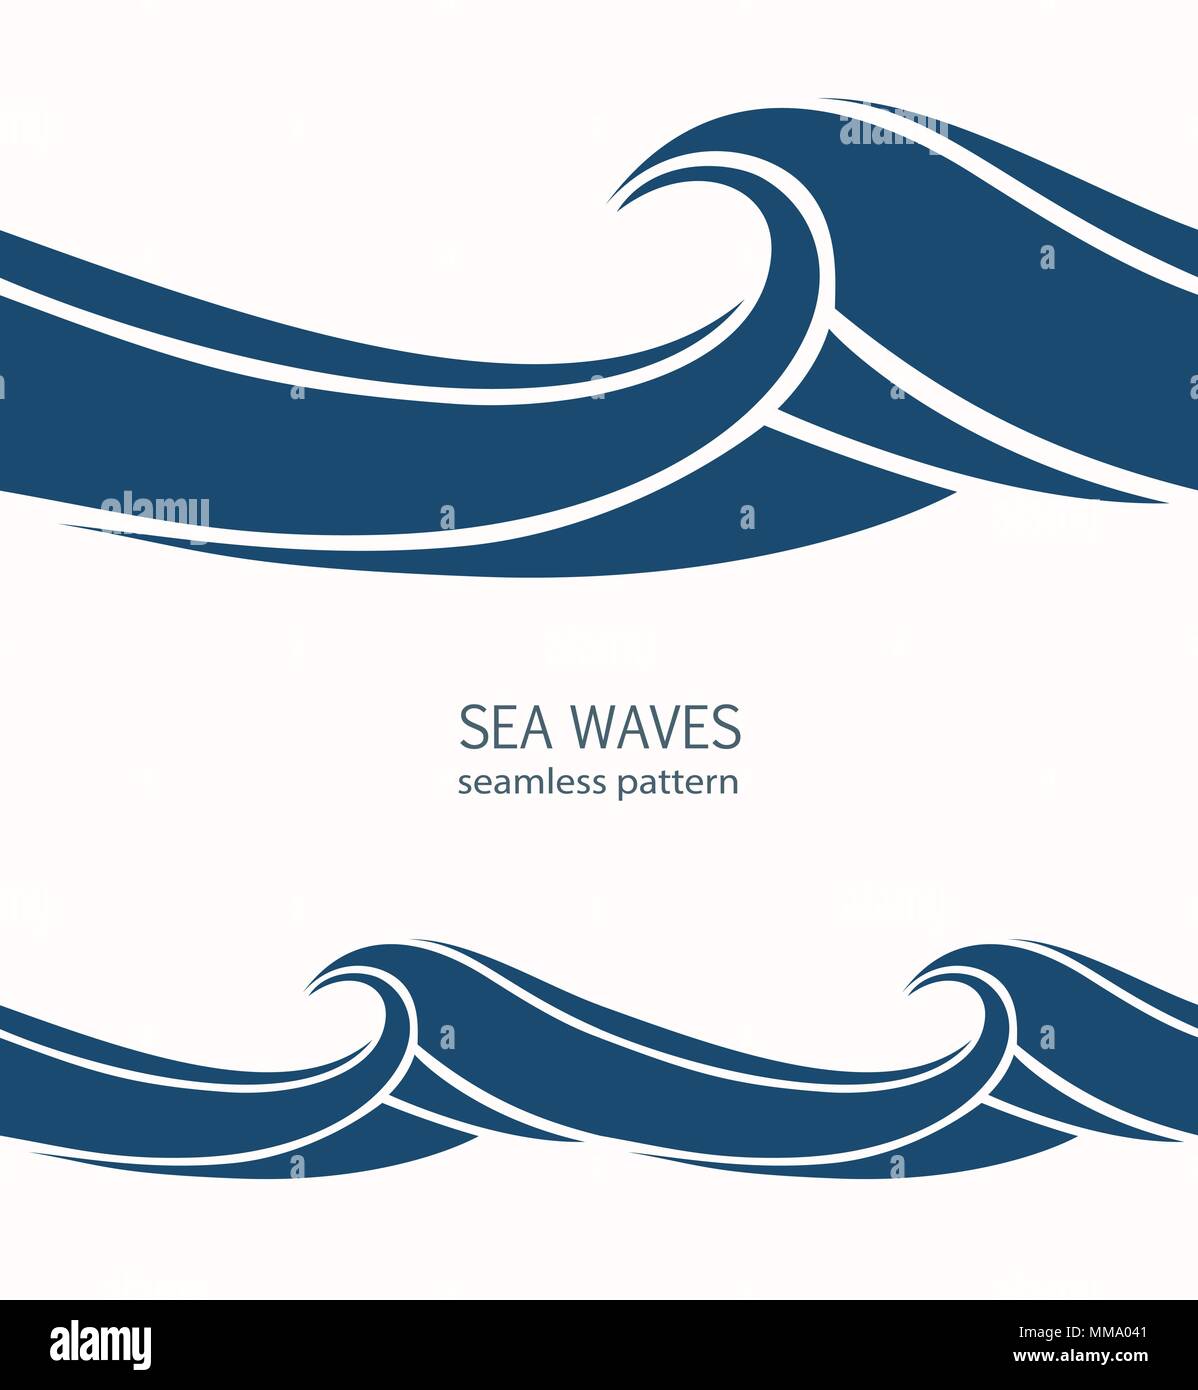 Transparente avec motif Marine vagues bleu stylisé sur un fond clair. Eau vague abstract design. Illustration de Vecteur